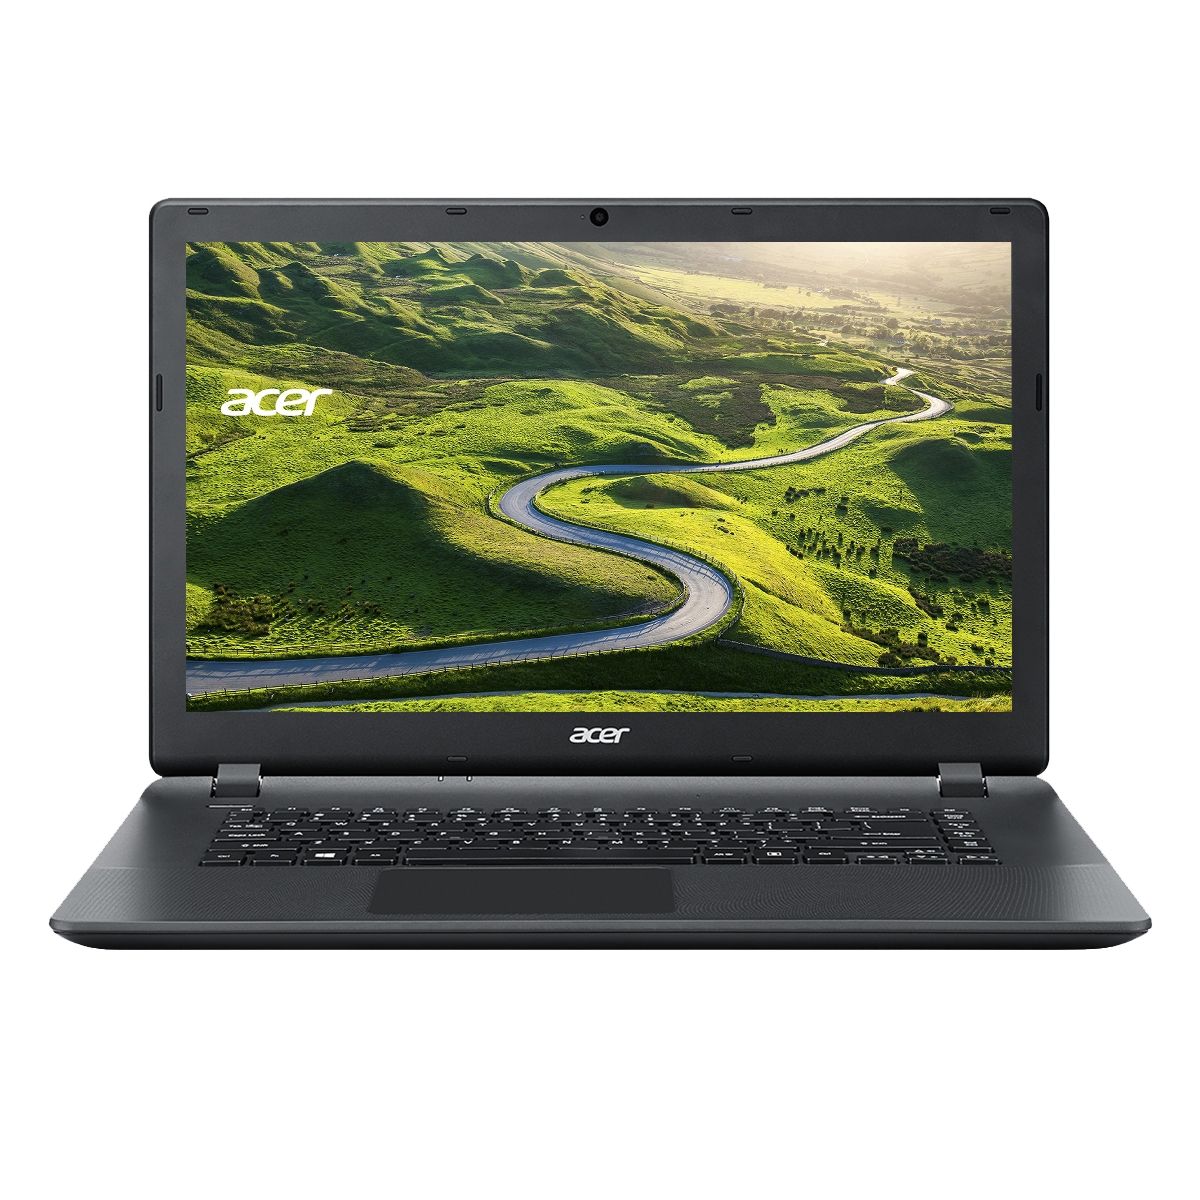  Acer Aspire ES1-520, AMD E1-2500, 4GB DDR3, HDD 500GB, AMD Radeon, Linux 